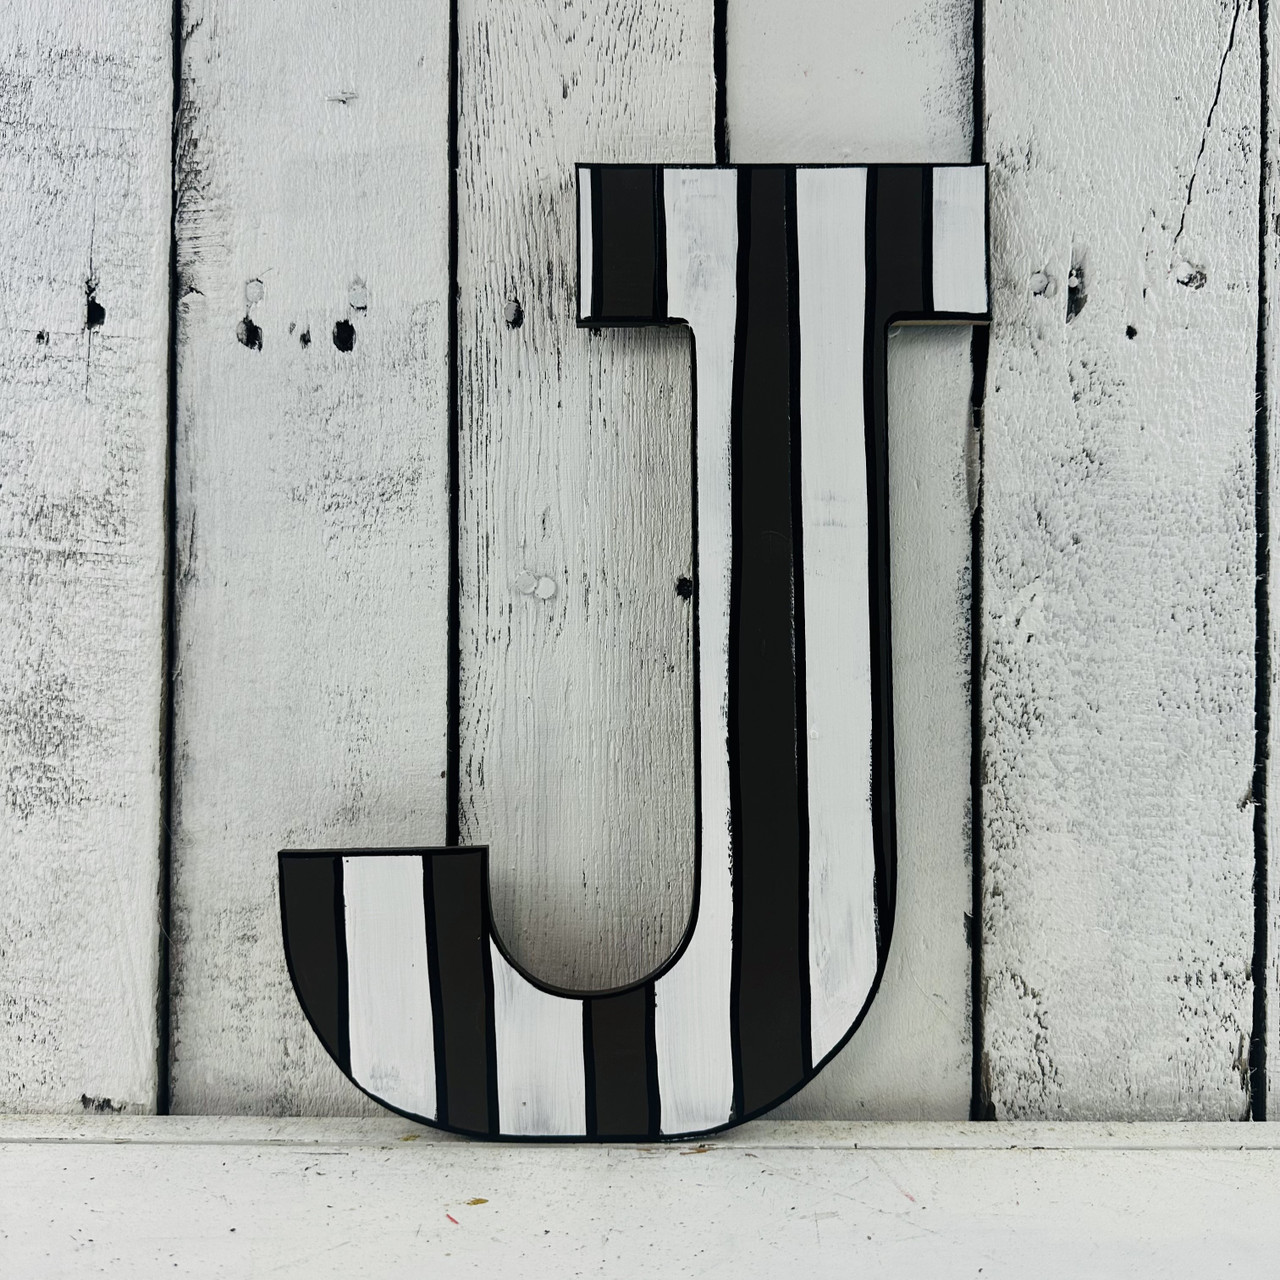 J Alphabet Letter Monogram Initial Tile Plaque Wall Accent